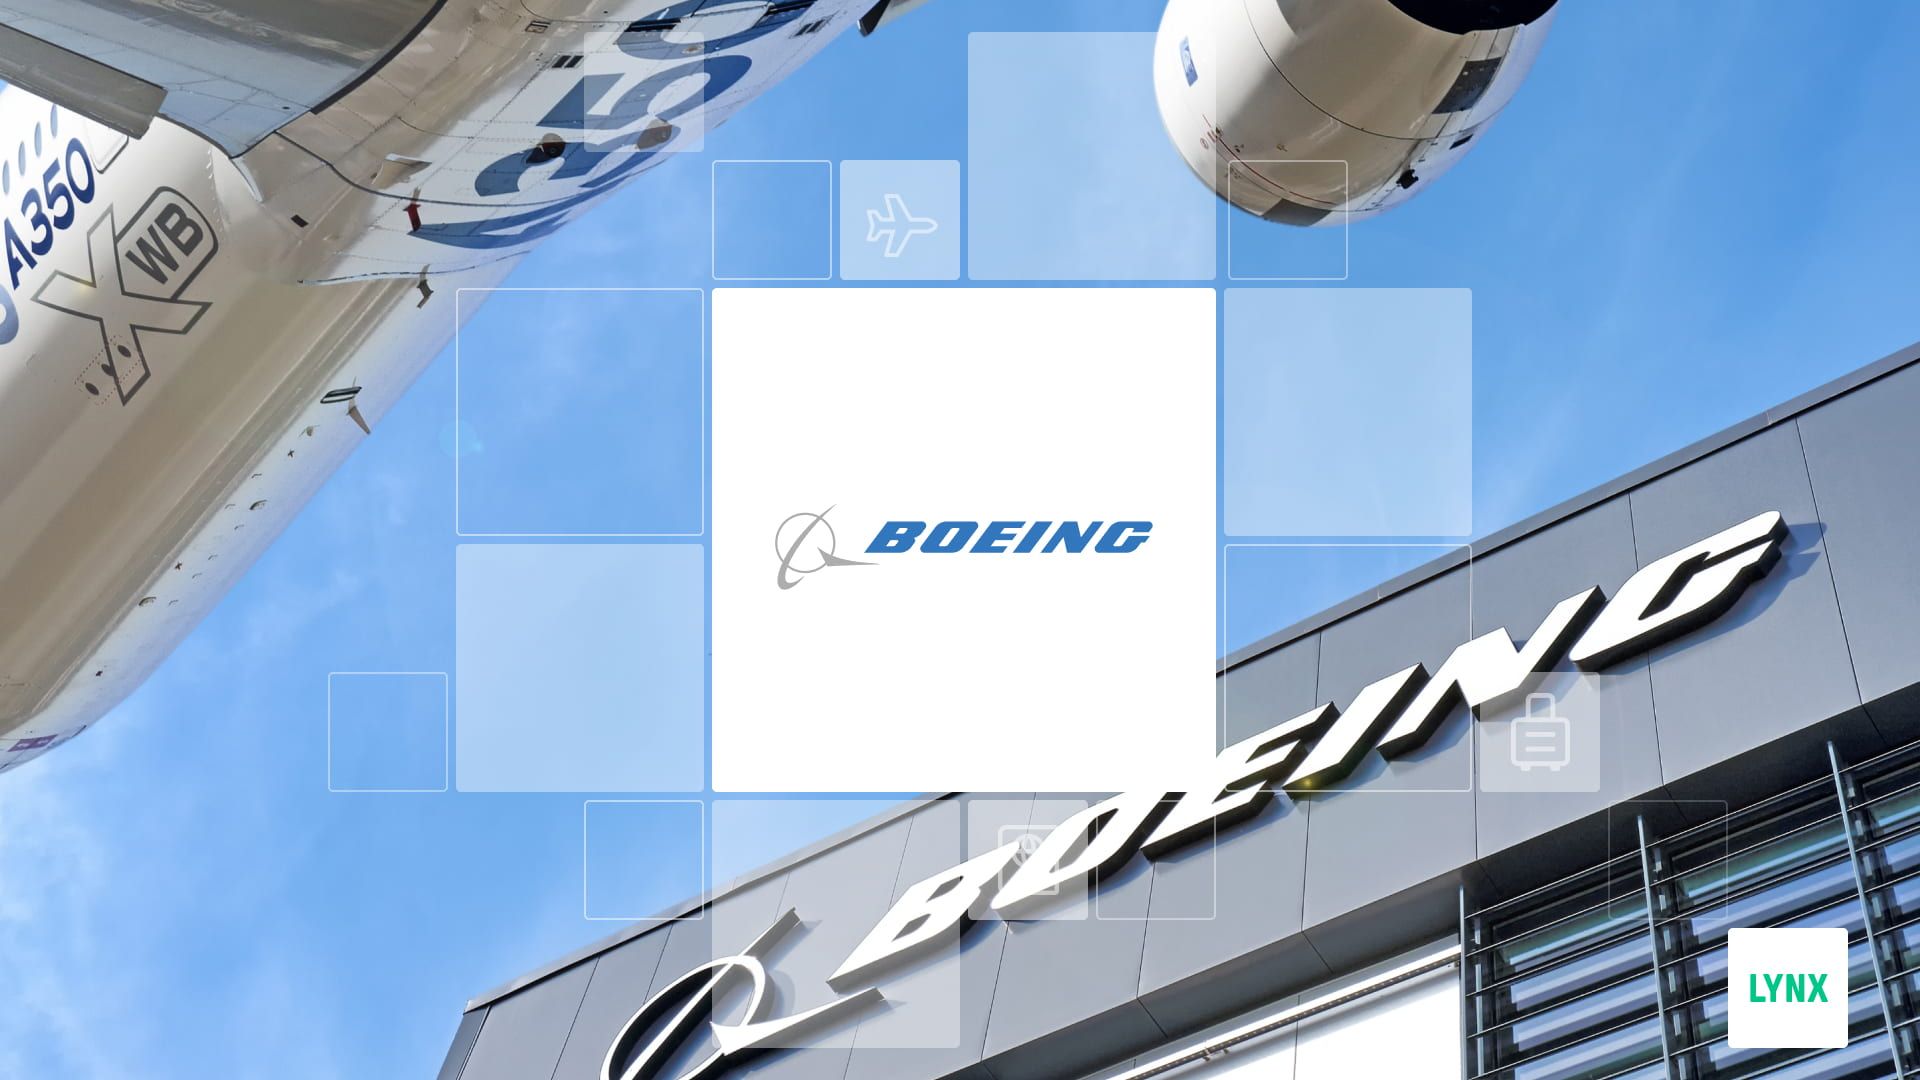 Letadlo a logo společnosti Boeing